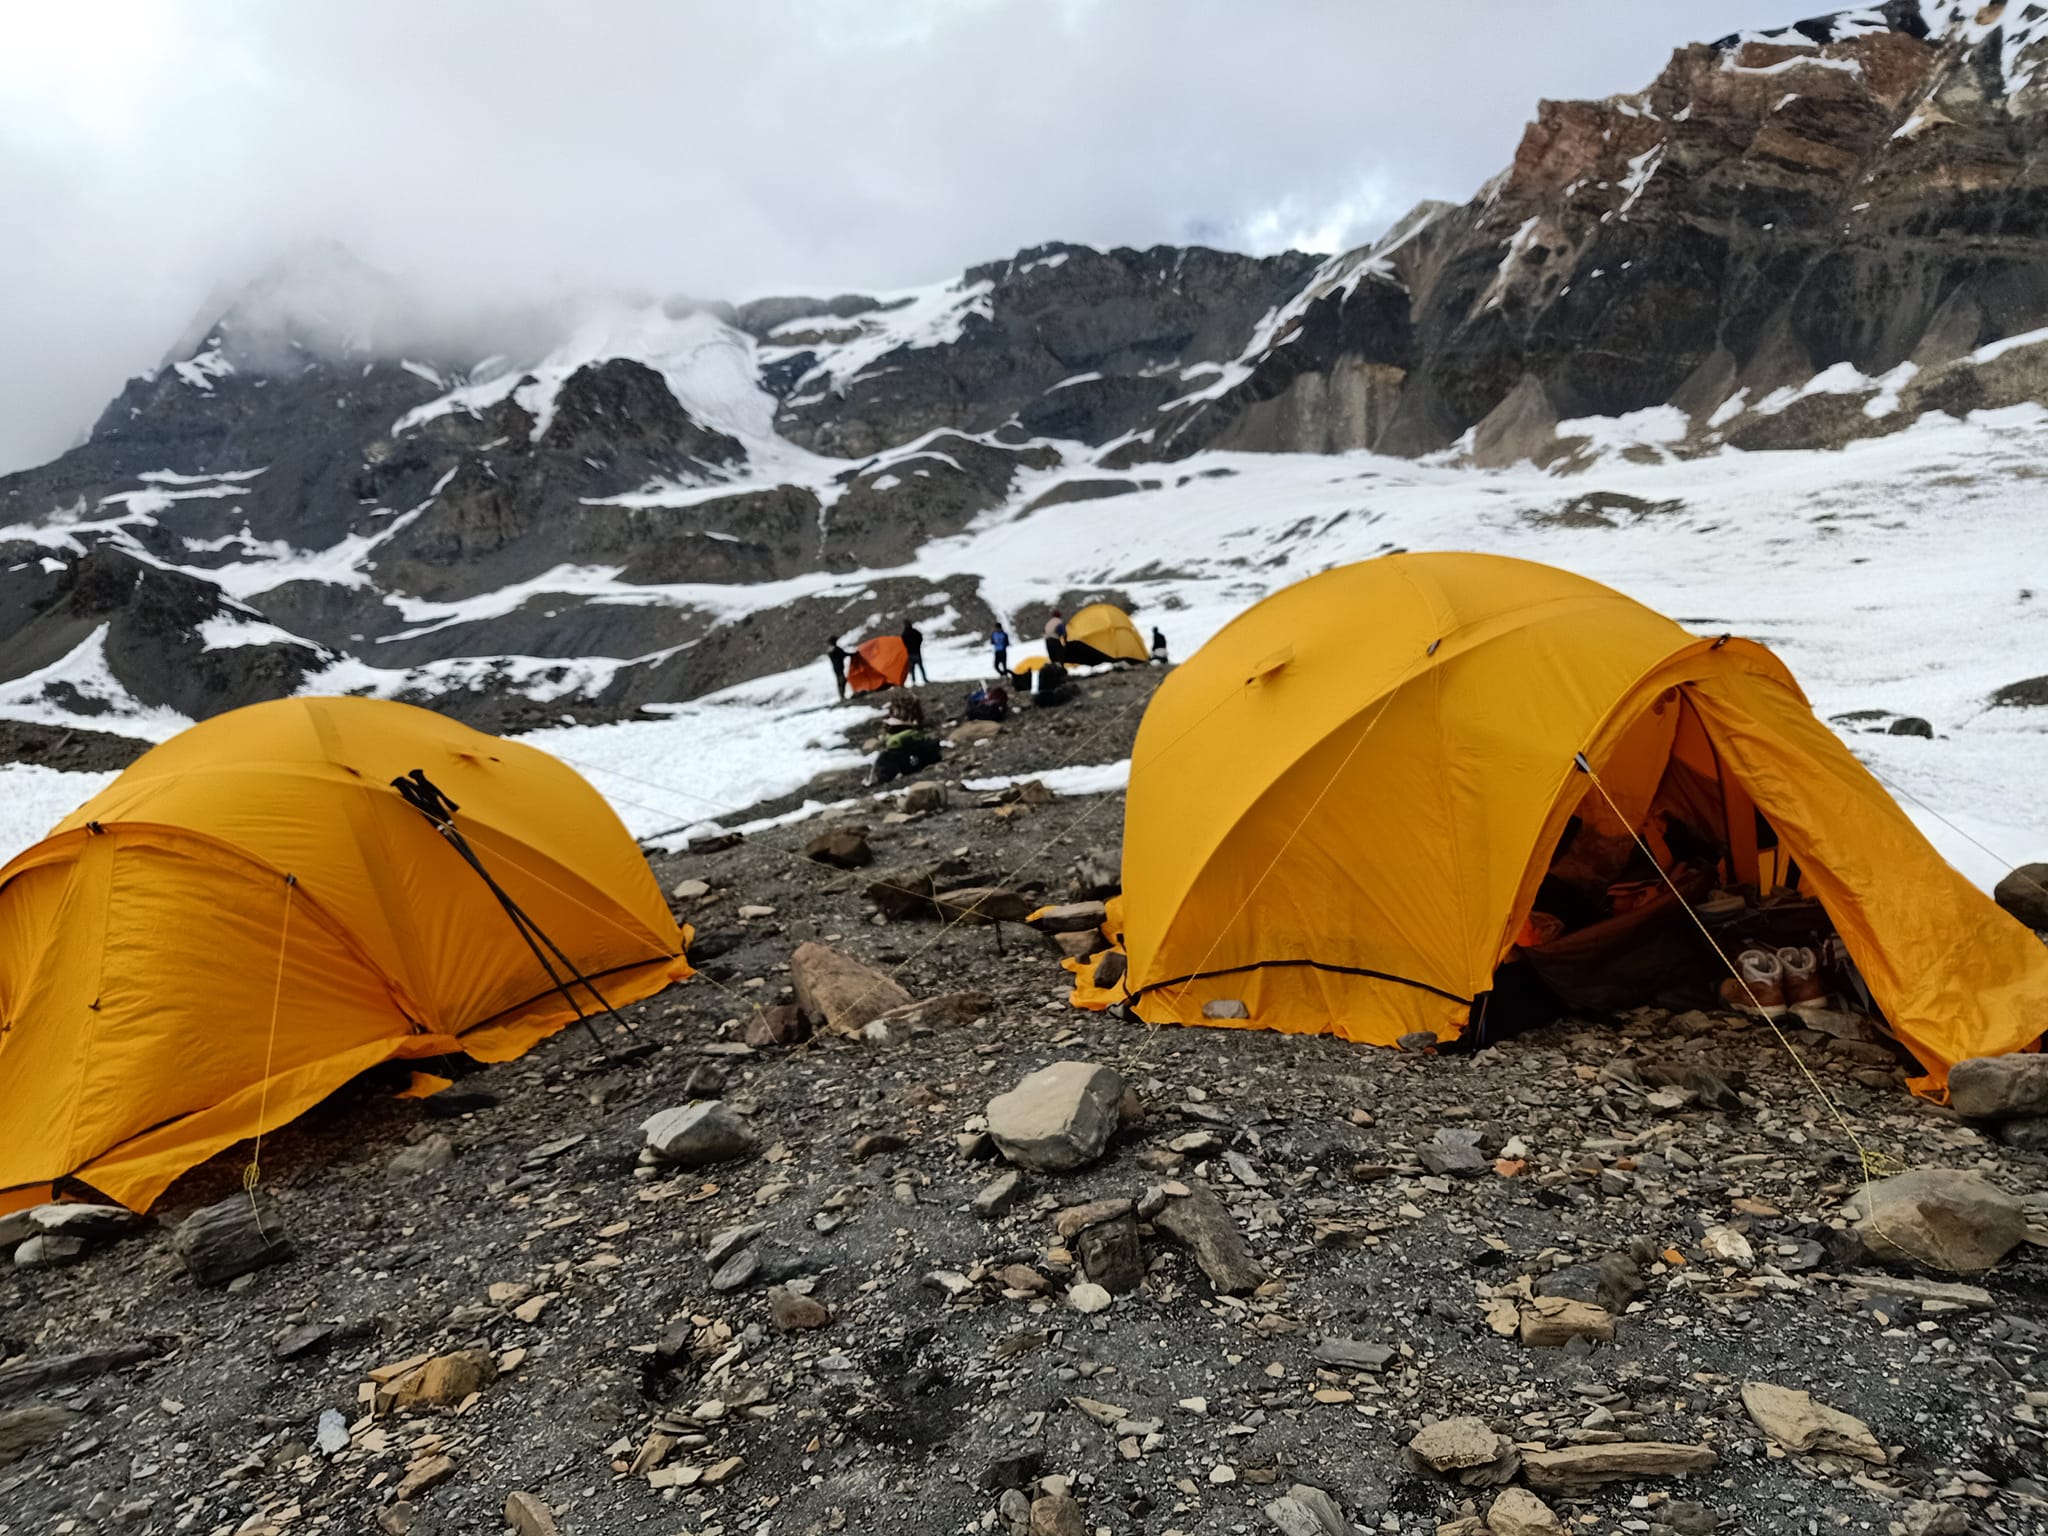 campingsite at 5400m.jpg